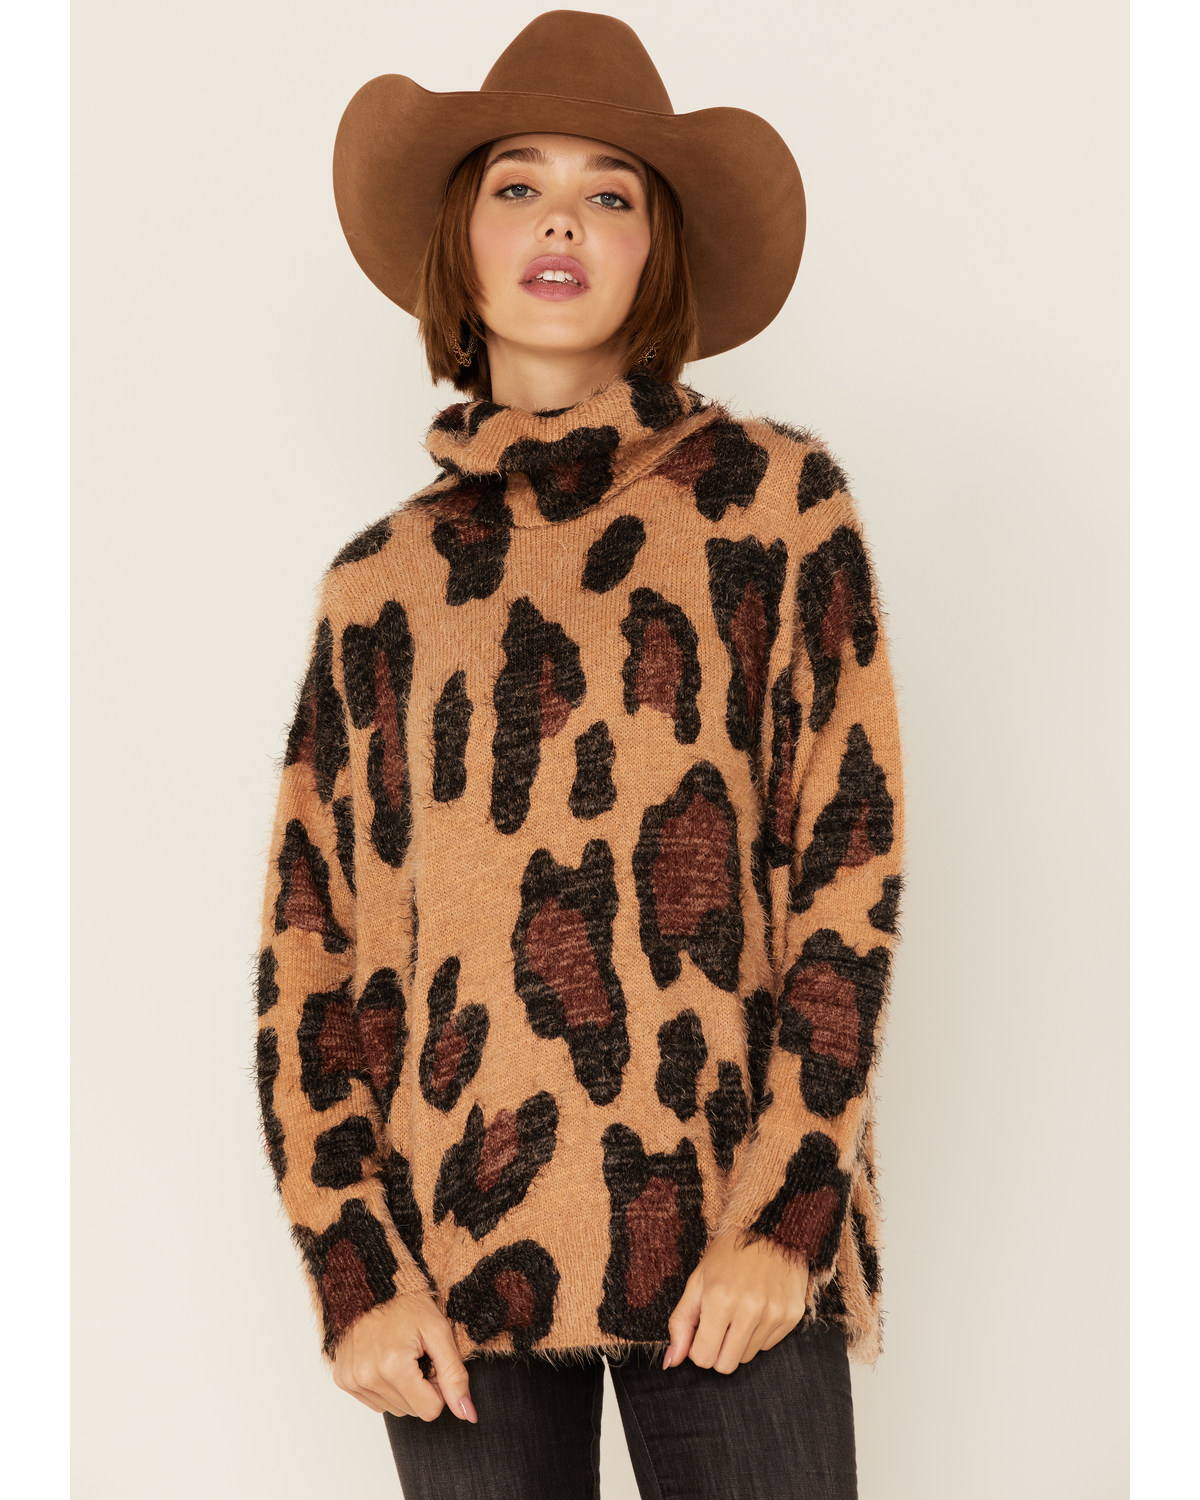 Show Me Your Mumu Women's Cheetah Fever Sweater